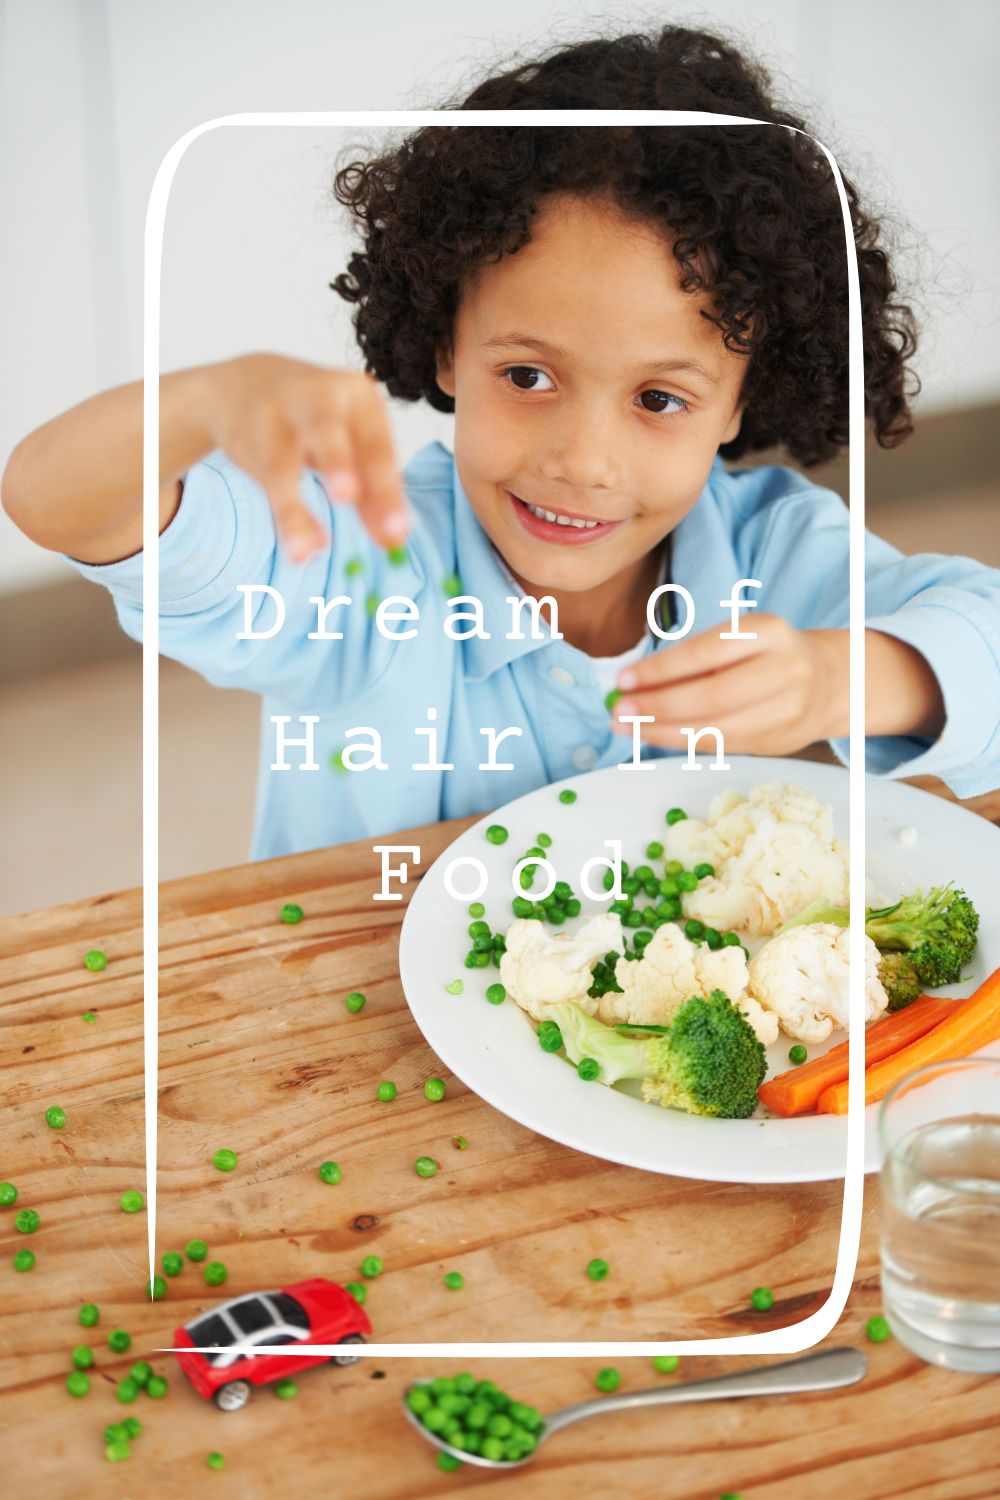 Dream Of Hair In Food Meanings 2